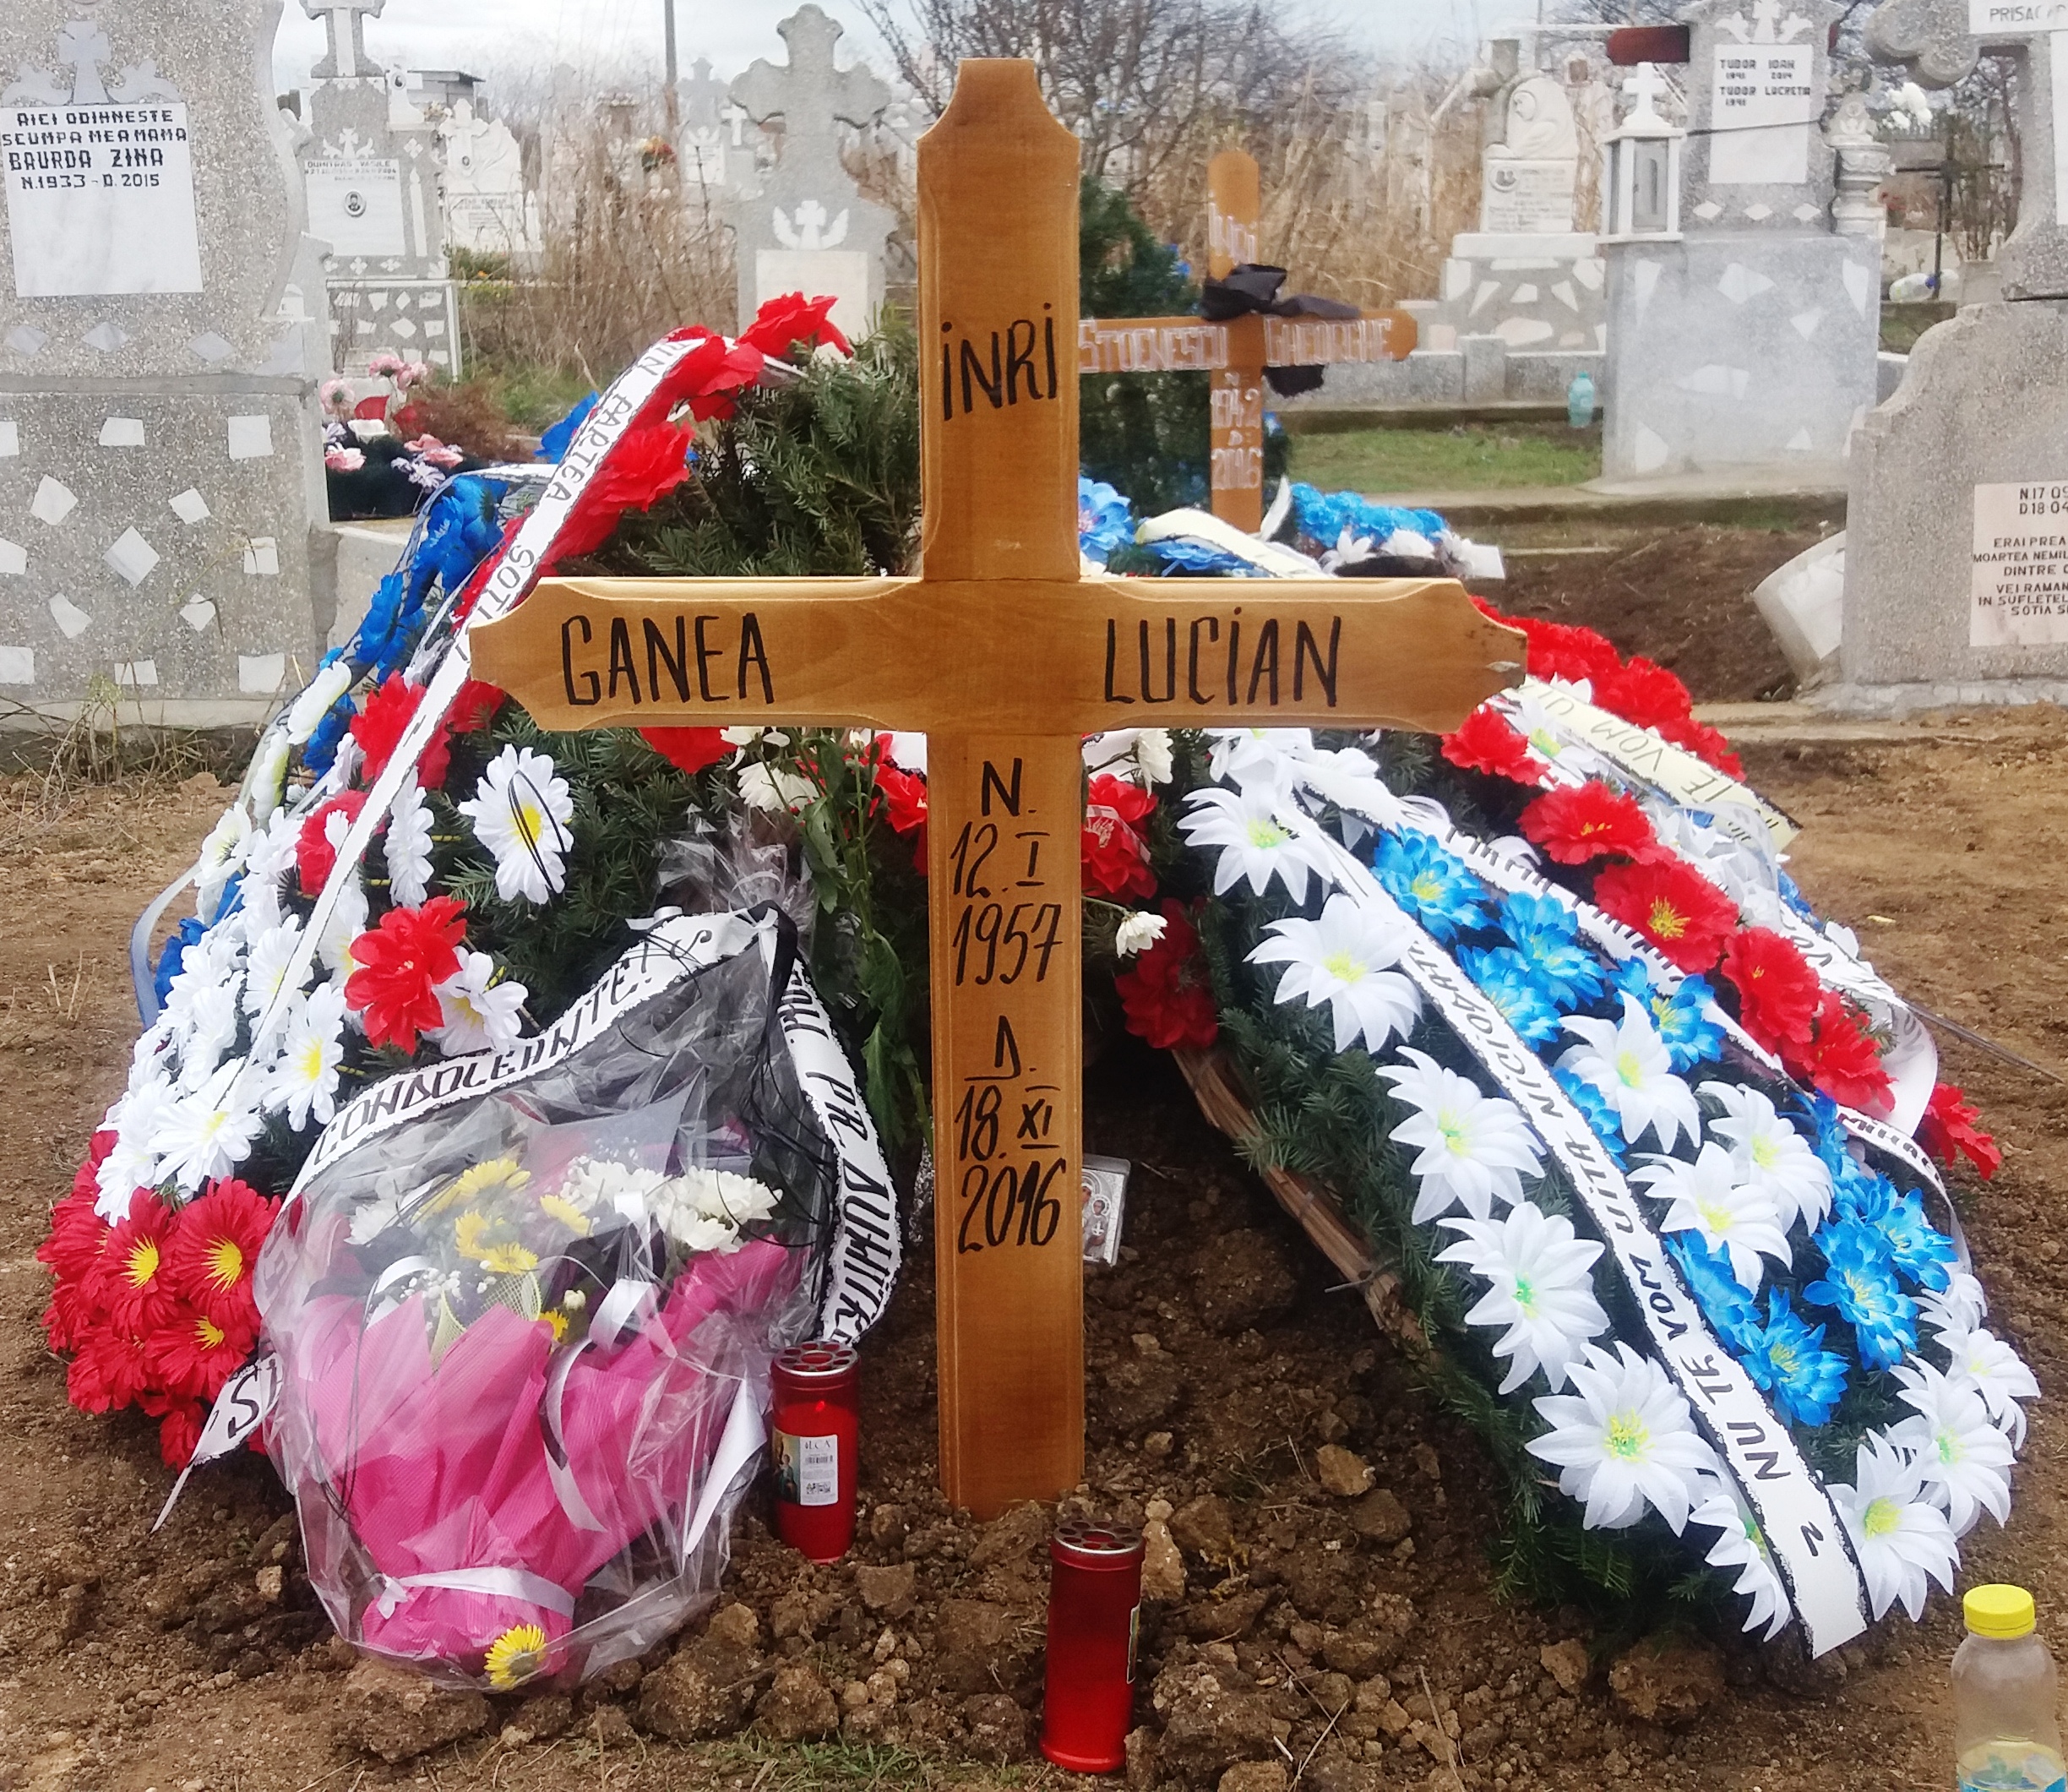 În acest mormânt zace răspunsul la întrebarea "Cine l-a dterminat pe preotul Lucian Ganea să se sinucidă?"